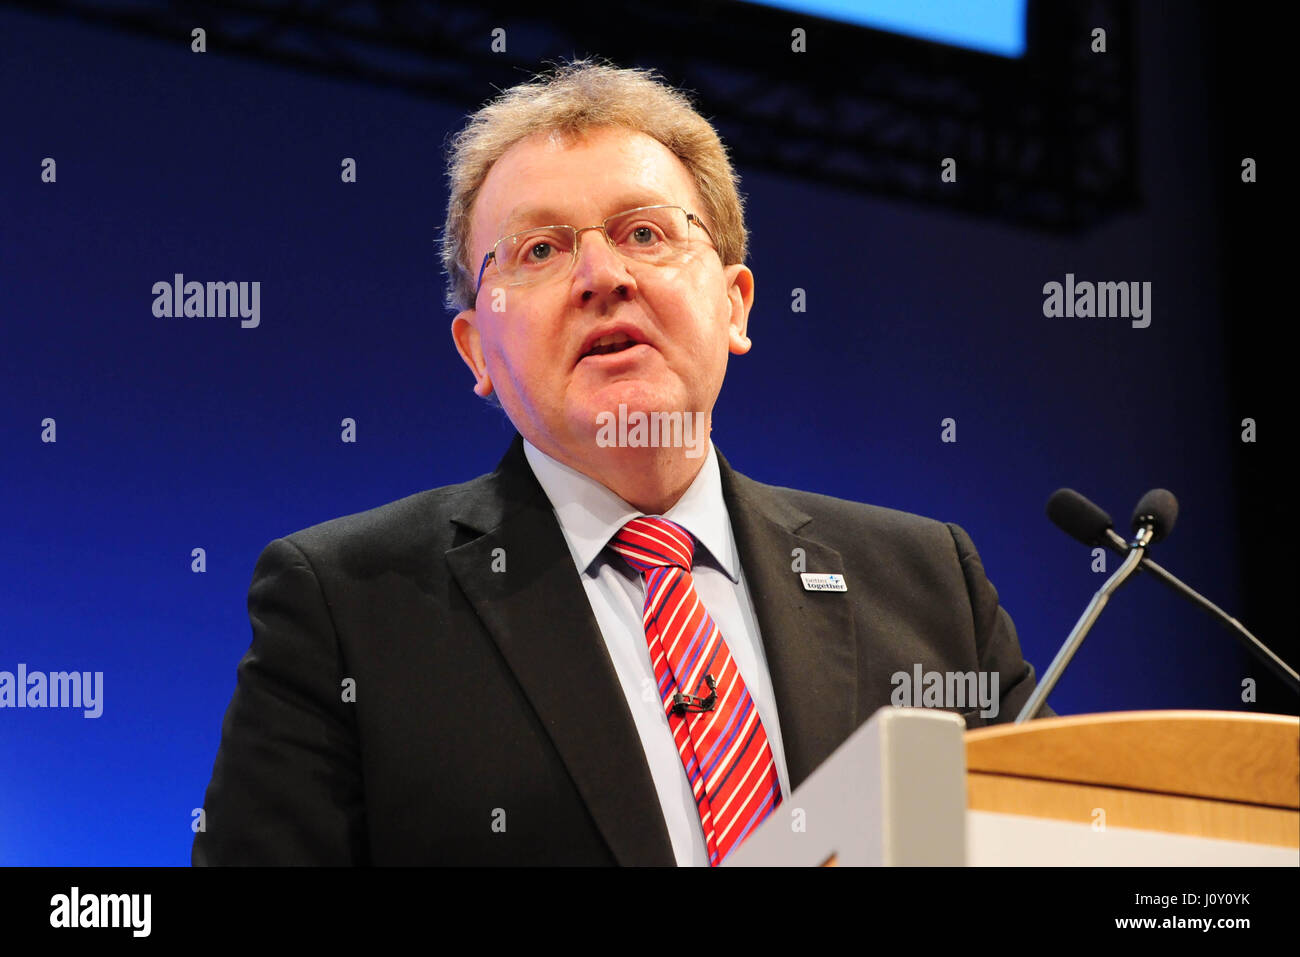 L'Écosse Office Ministre David Mundell, le seul député conservateur en Ecosse, ouvre le deuxième jour de la conférence du parti conservateur écossais à Édimbourg Banque D'Images